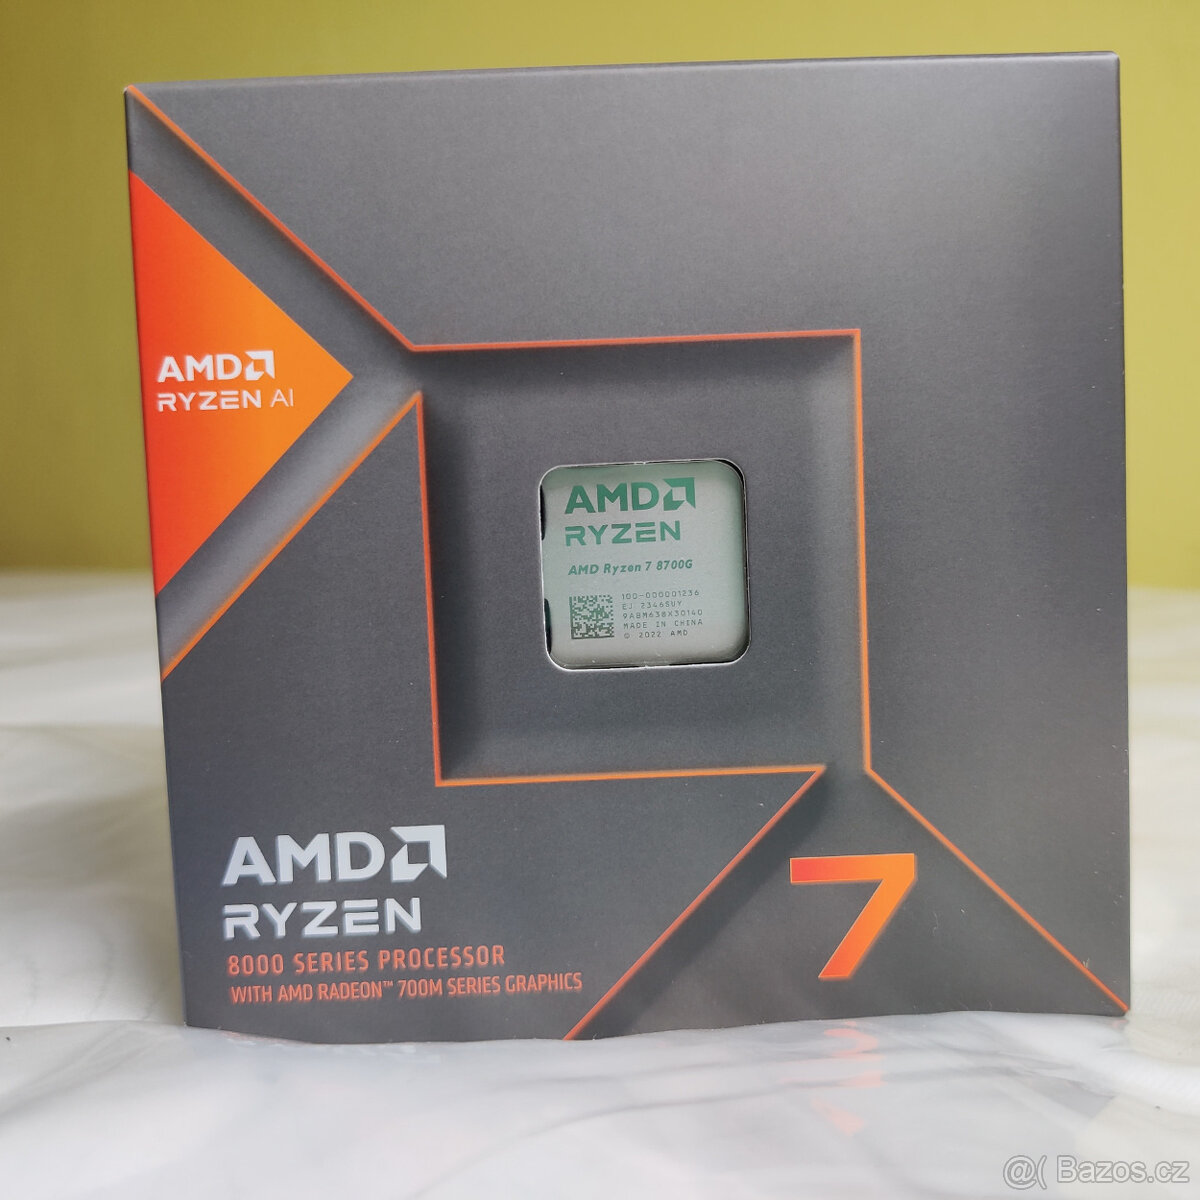 AMD Ryzen 8700G socket AM5